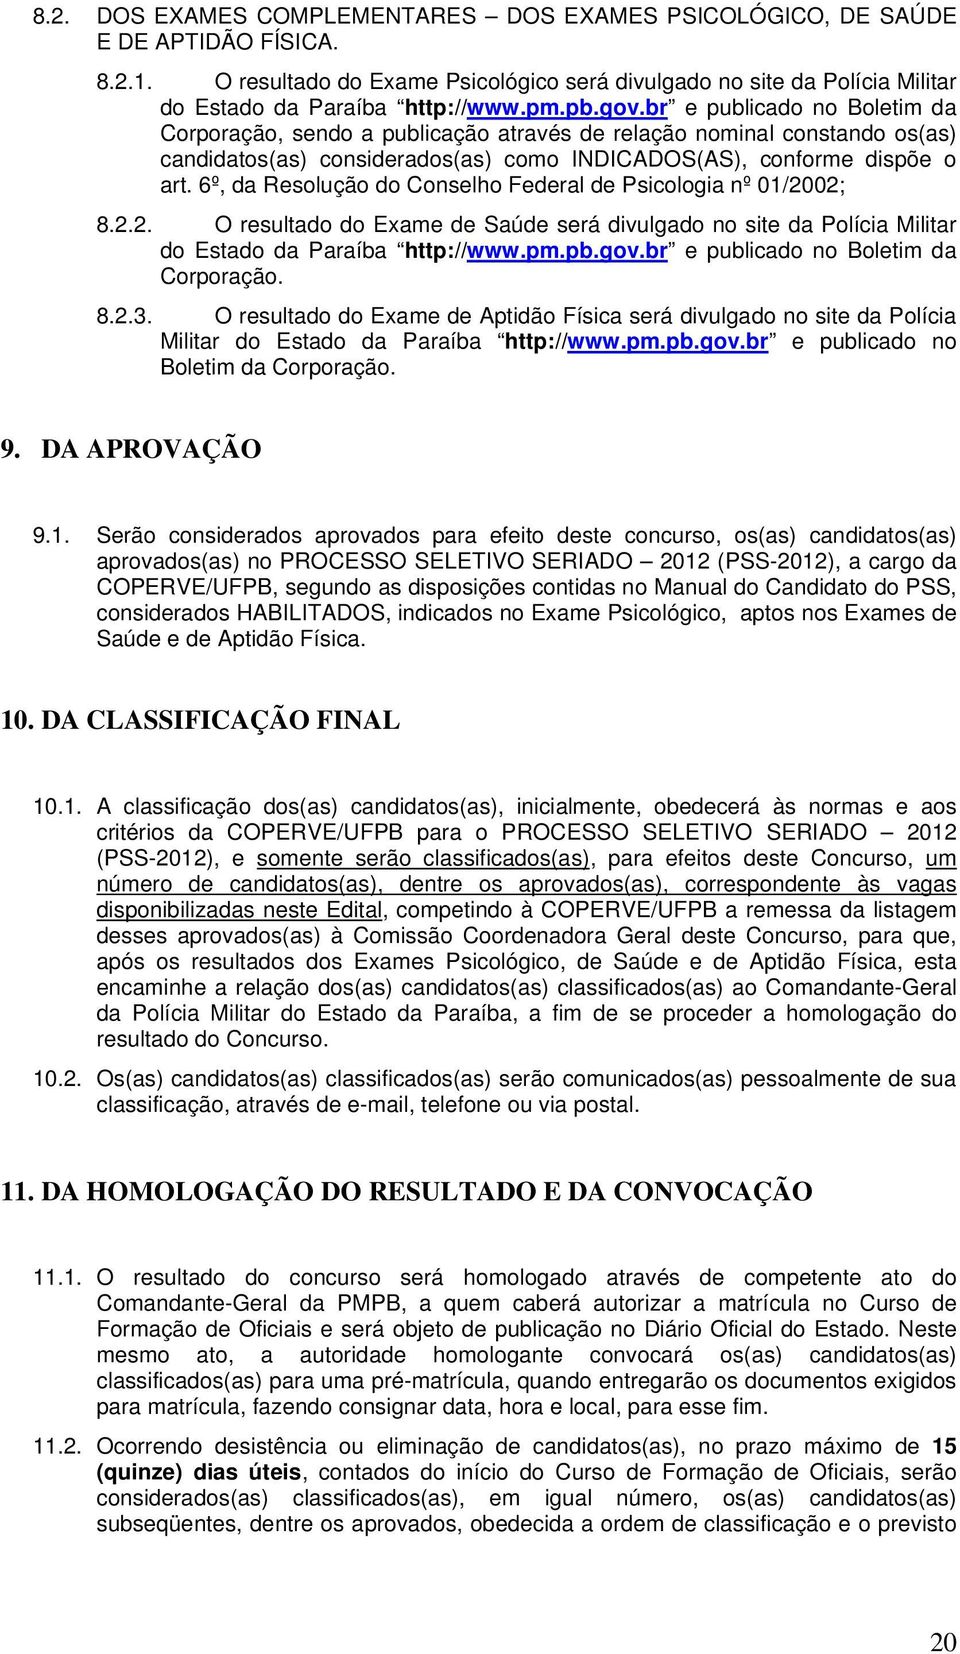 6º, da Resolução do Conselho Federal de Psicologia nº 01/2002; 8.2.2. O resultado do Exame de Saúde será divulgado no site da Polícia Militar do Estado da Paraíba http://www.pm.pb.gov.